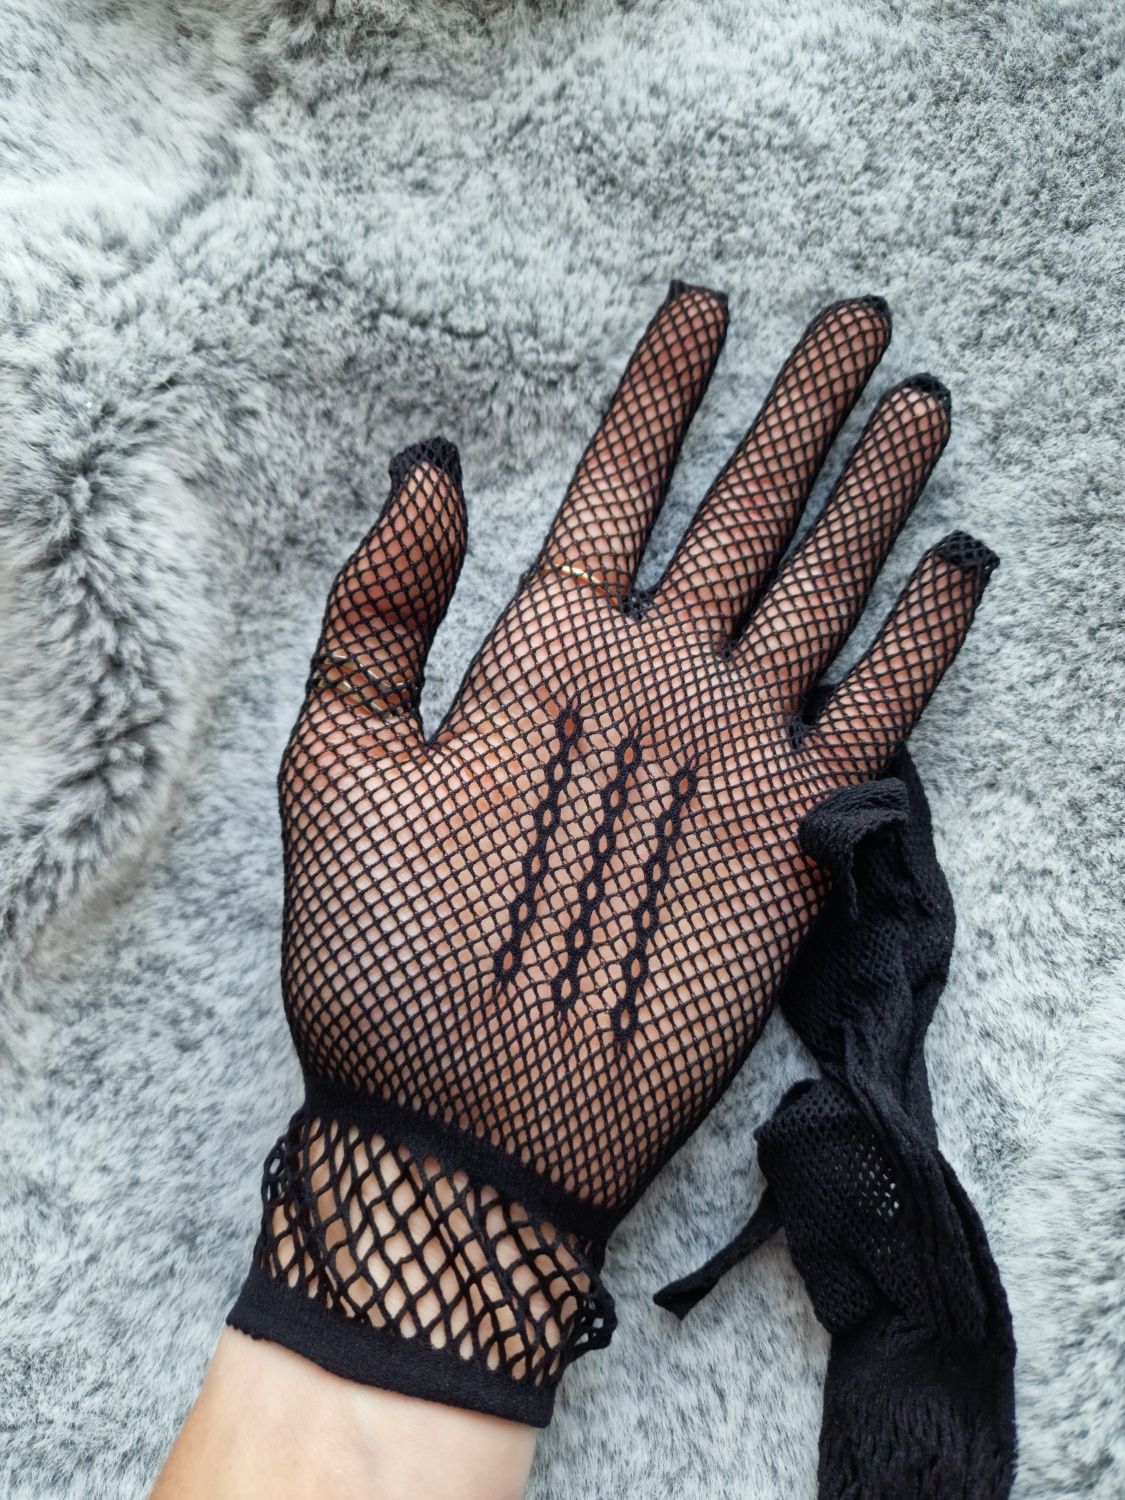 Czarne rękawiczki siateczkowe emo halloween gothic alternative